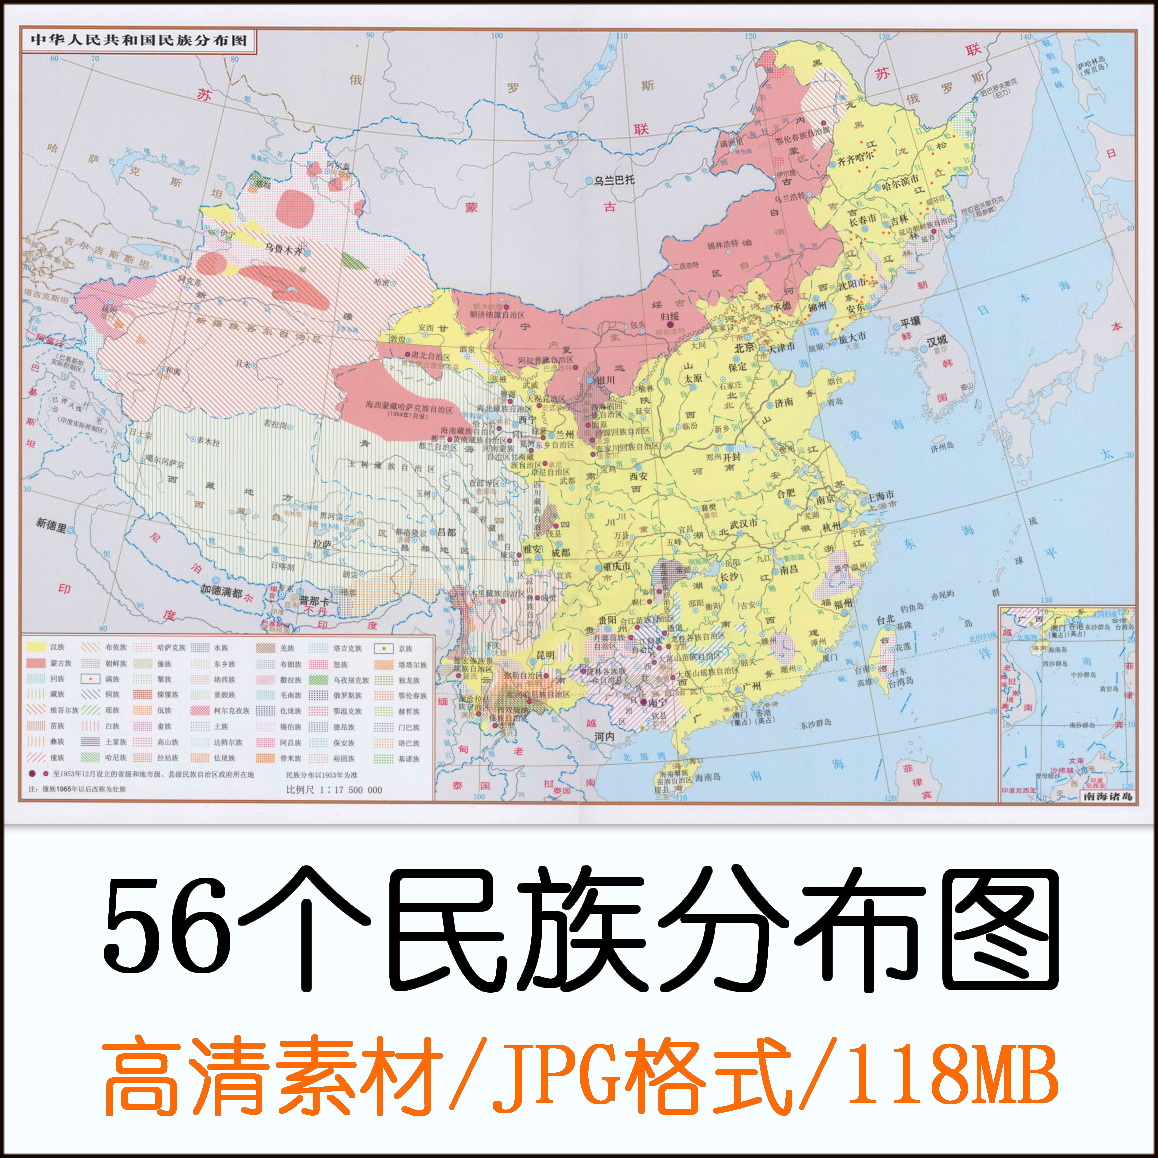 中国少数民族分布图 56个民族分布地图高清电子版素材JGP格式